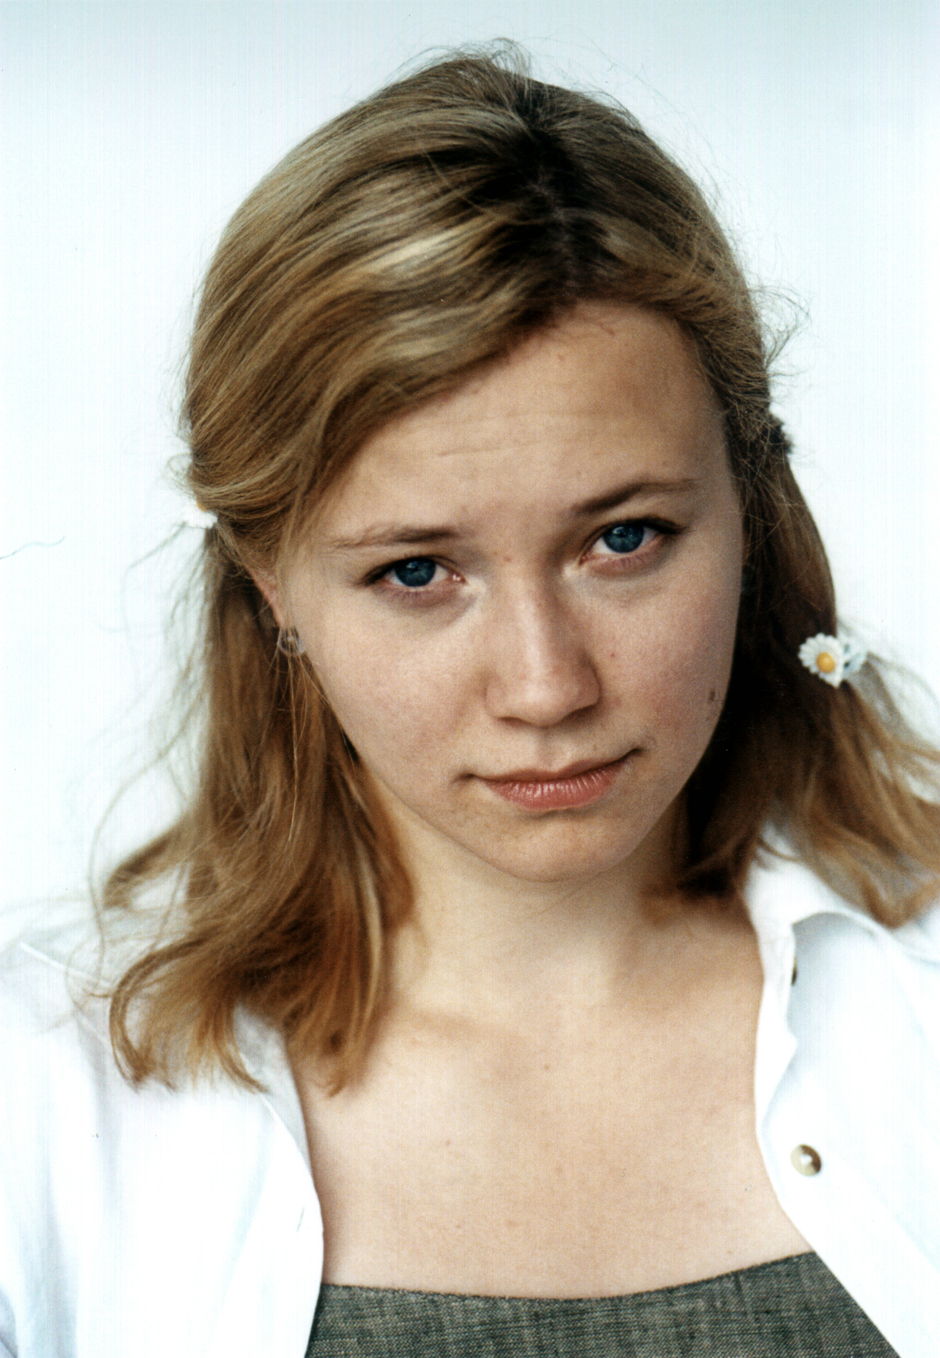 Agencja Gudejko: Magdalena Kizinkiewicz